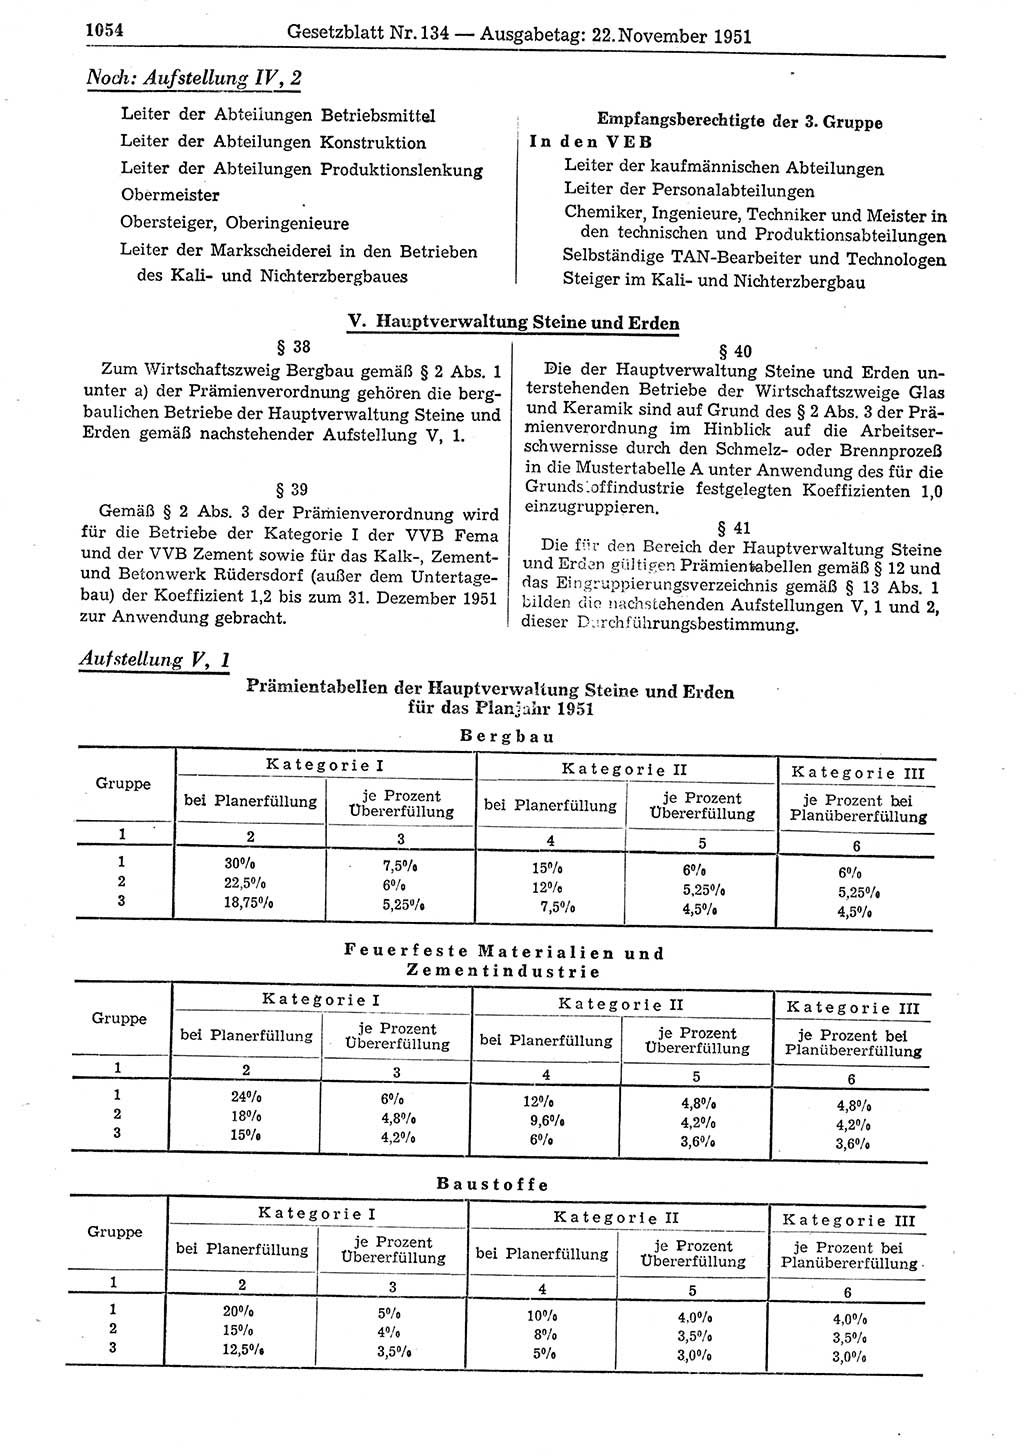 Gesetzblatt (GBl.) der Deutschen Demokratischen Republik (DDR) 1951, Seite 1054 (GBl. DDR 1951, S. 1054)